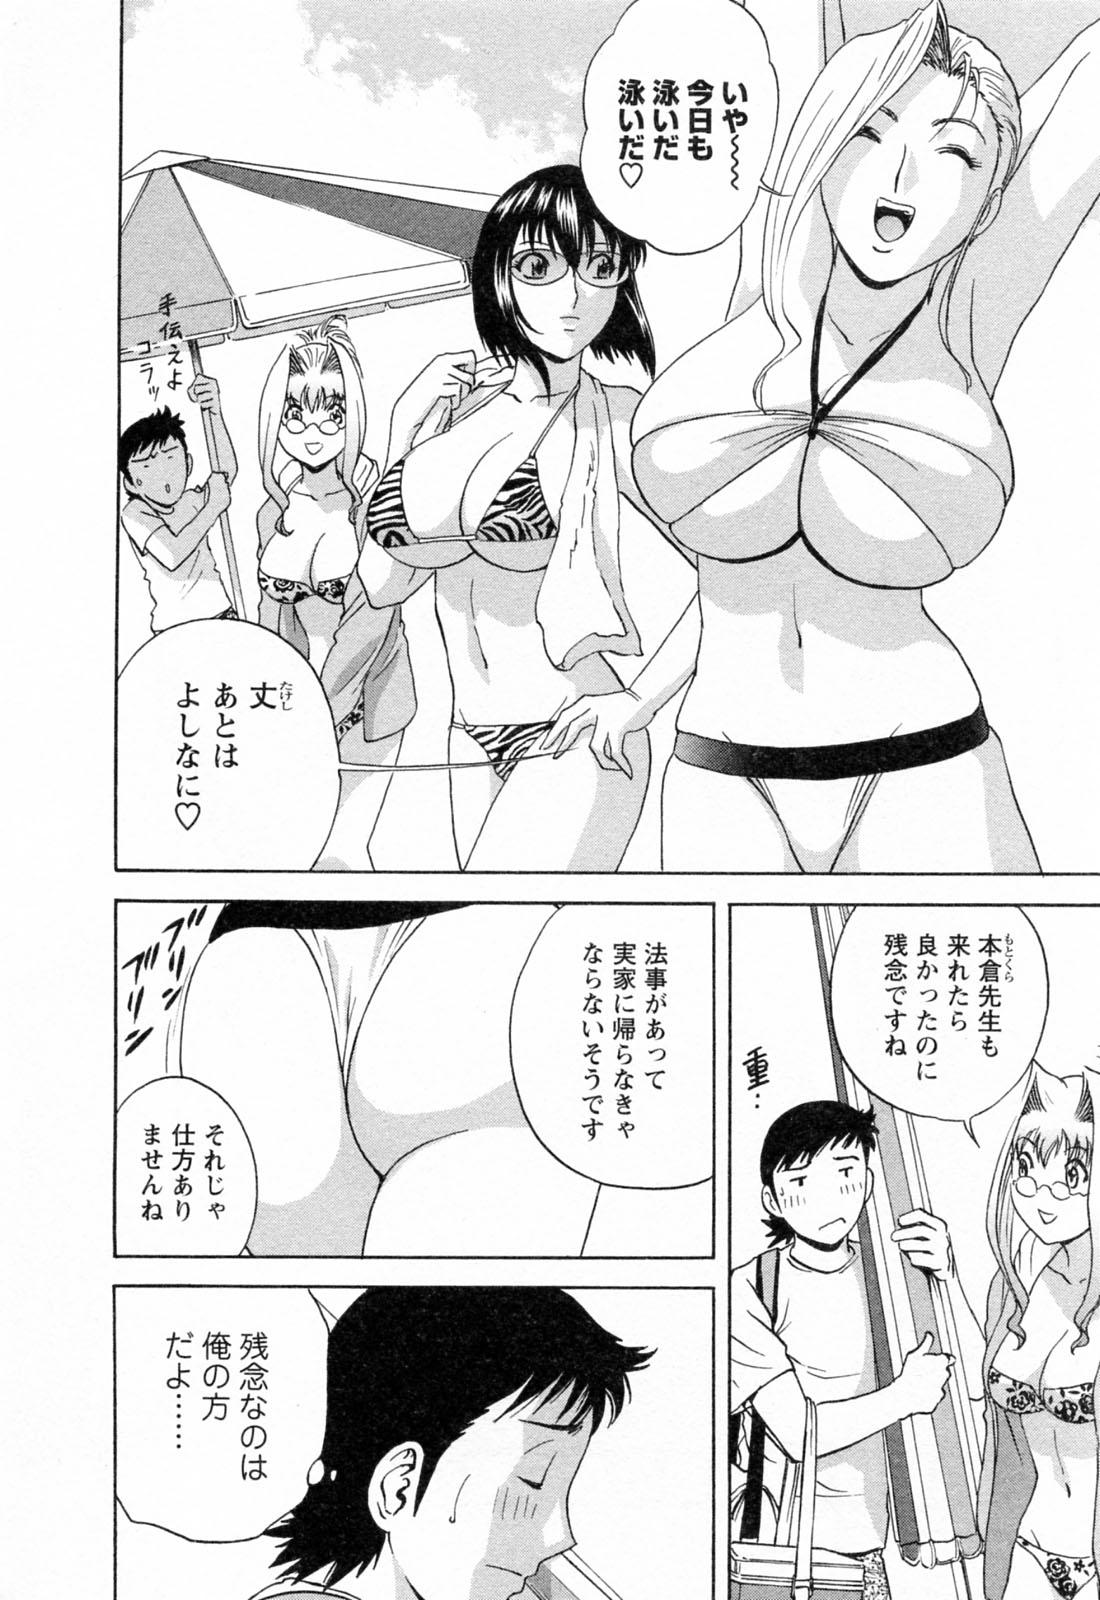 [Hidemaru] Mo-Retsu! Boin Sensei (Boing Boing Teacher) Vol.4 117